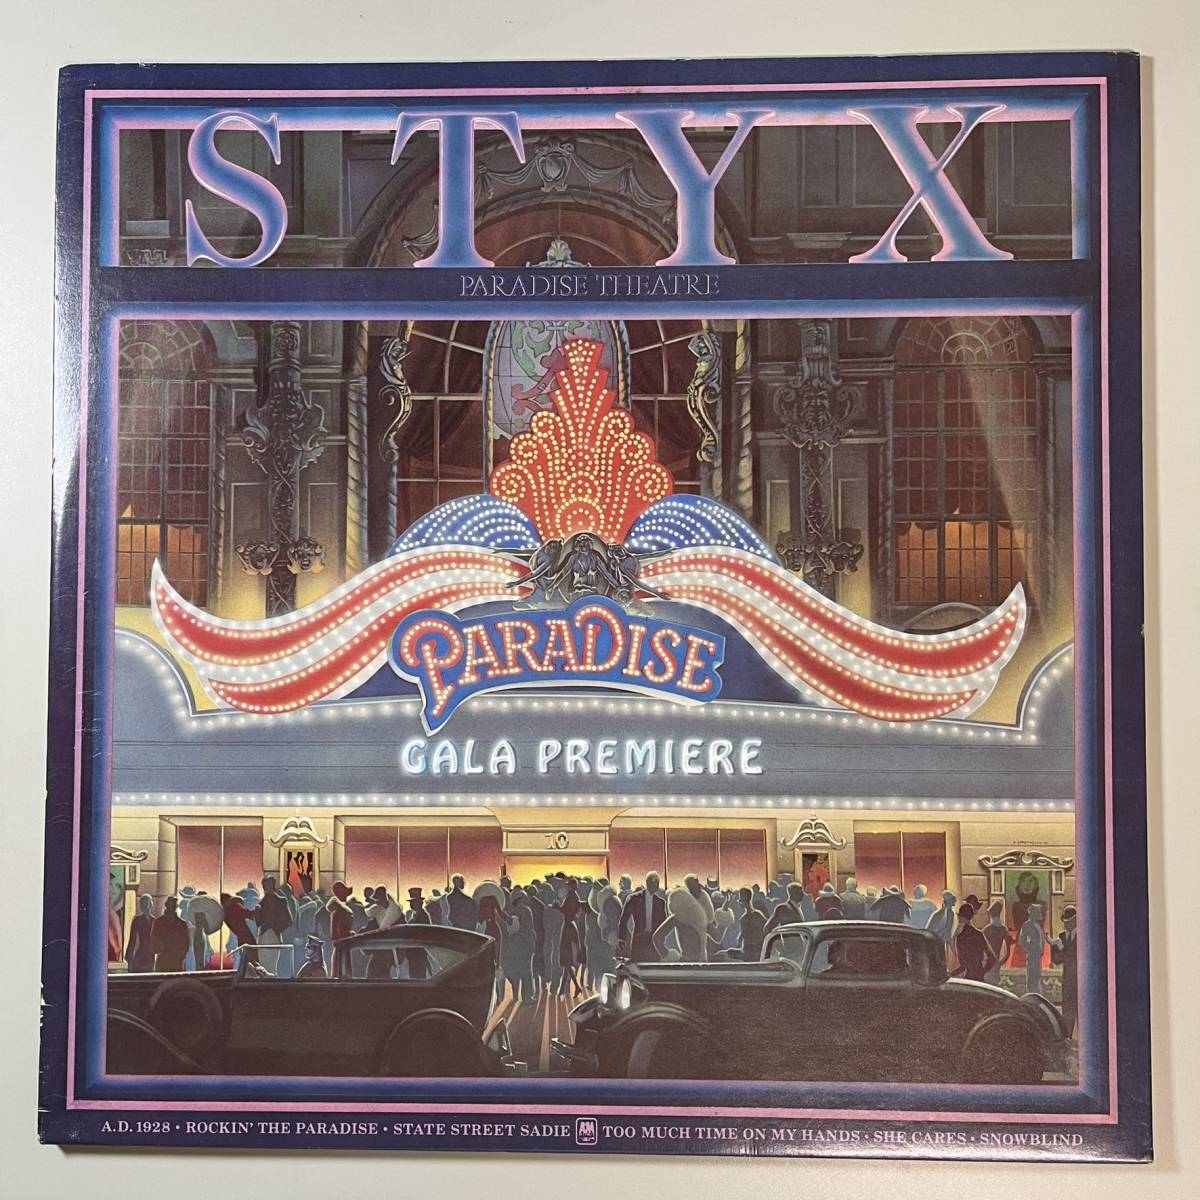 43434★美盤【US盤】 Styx / Paradise Theater ※レーザーエッチング仕様 ※STERLING刻印有_画像1